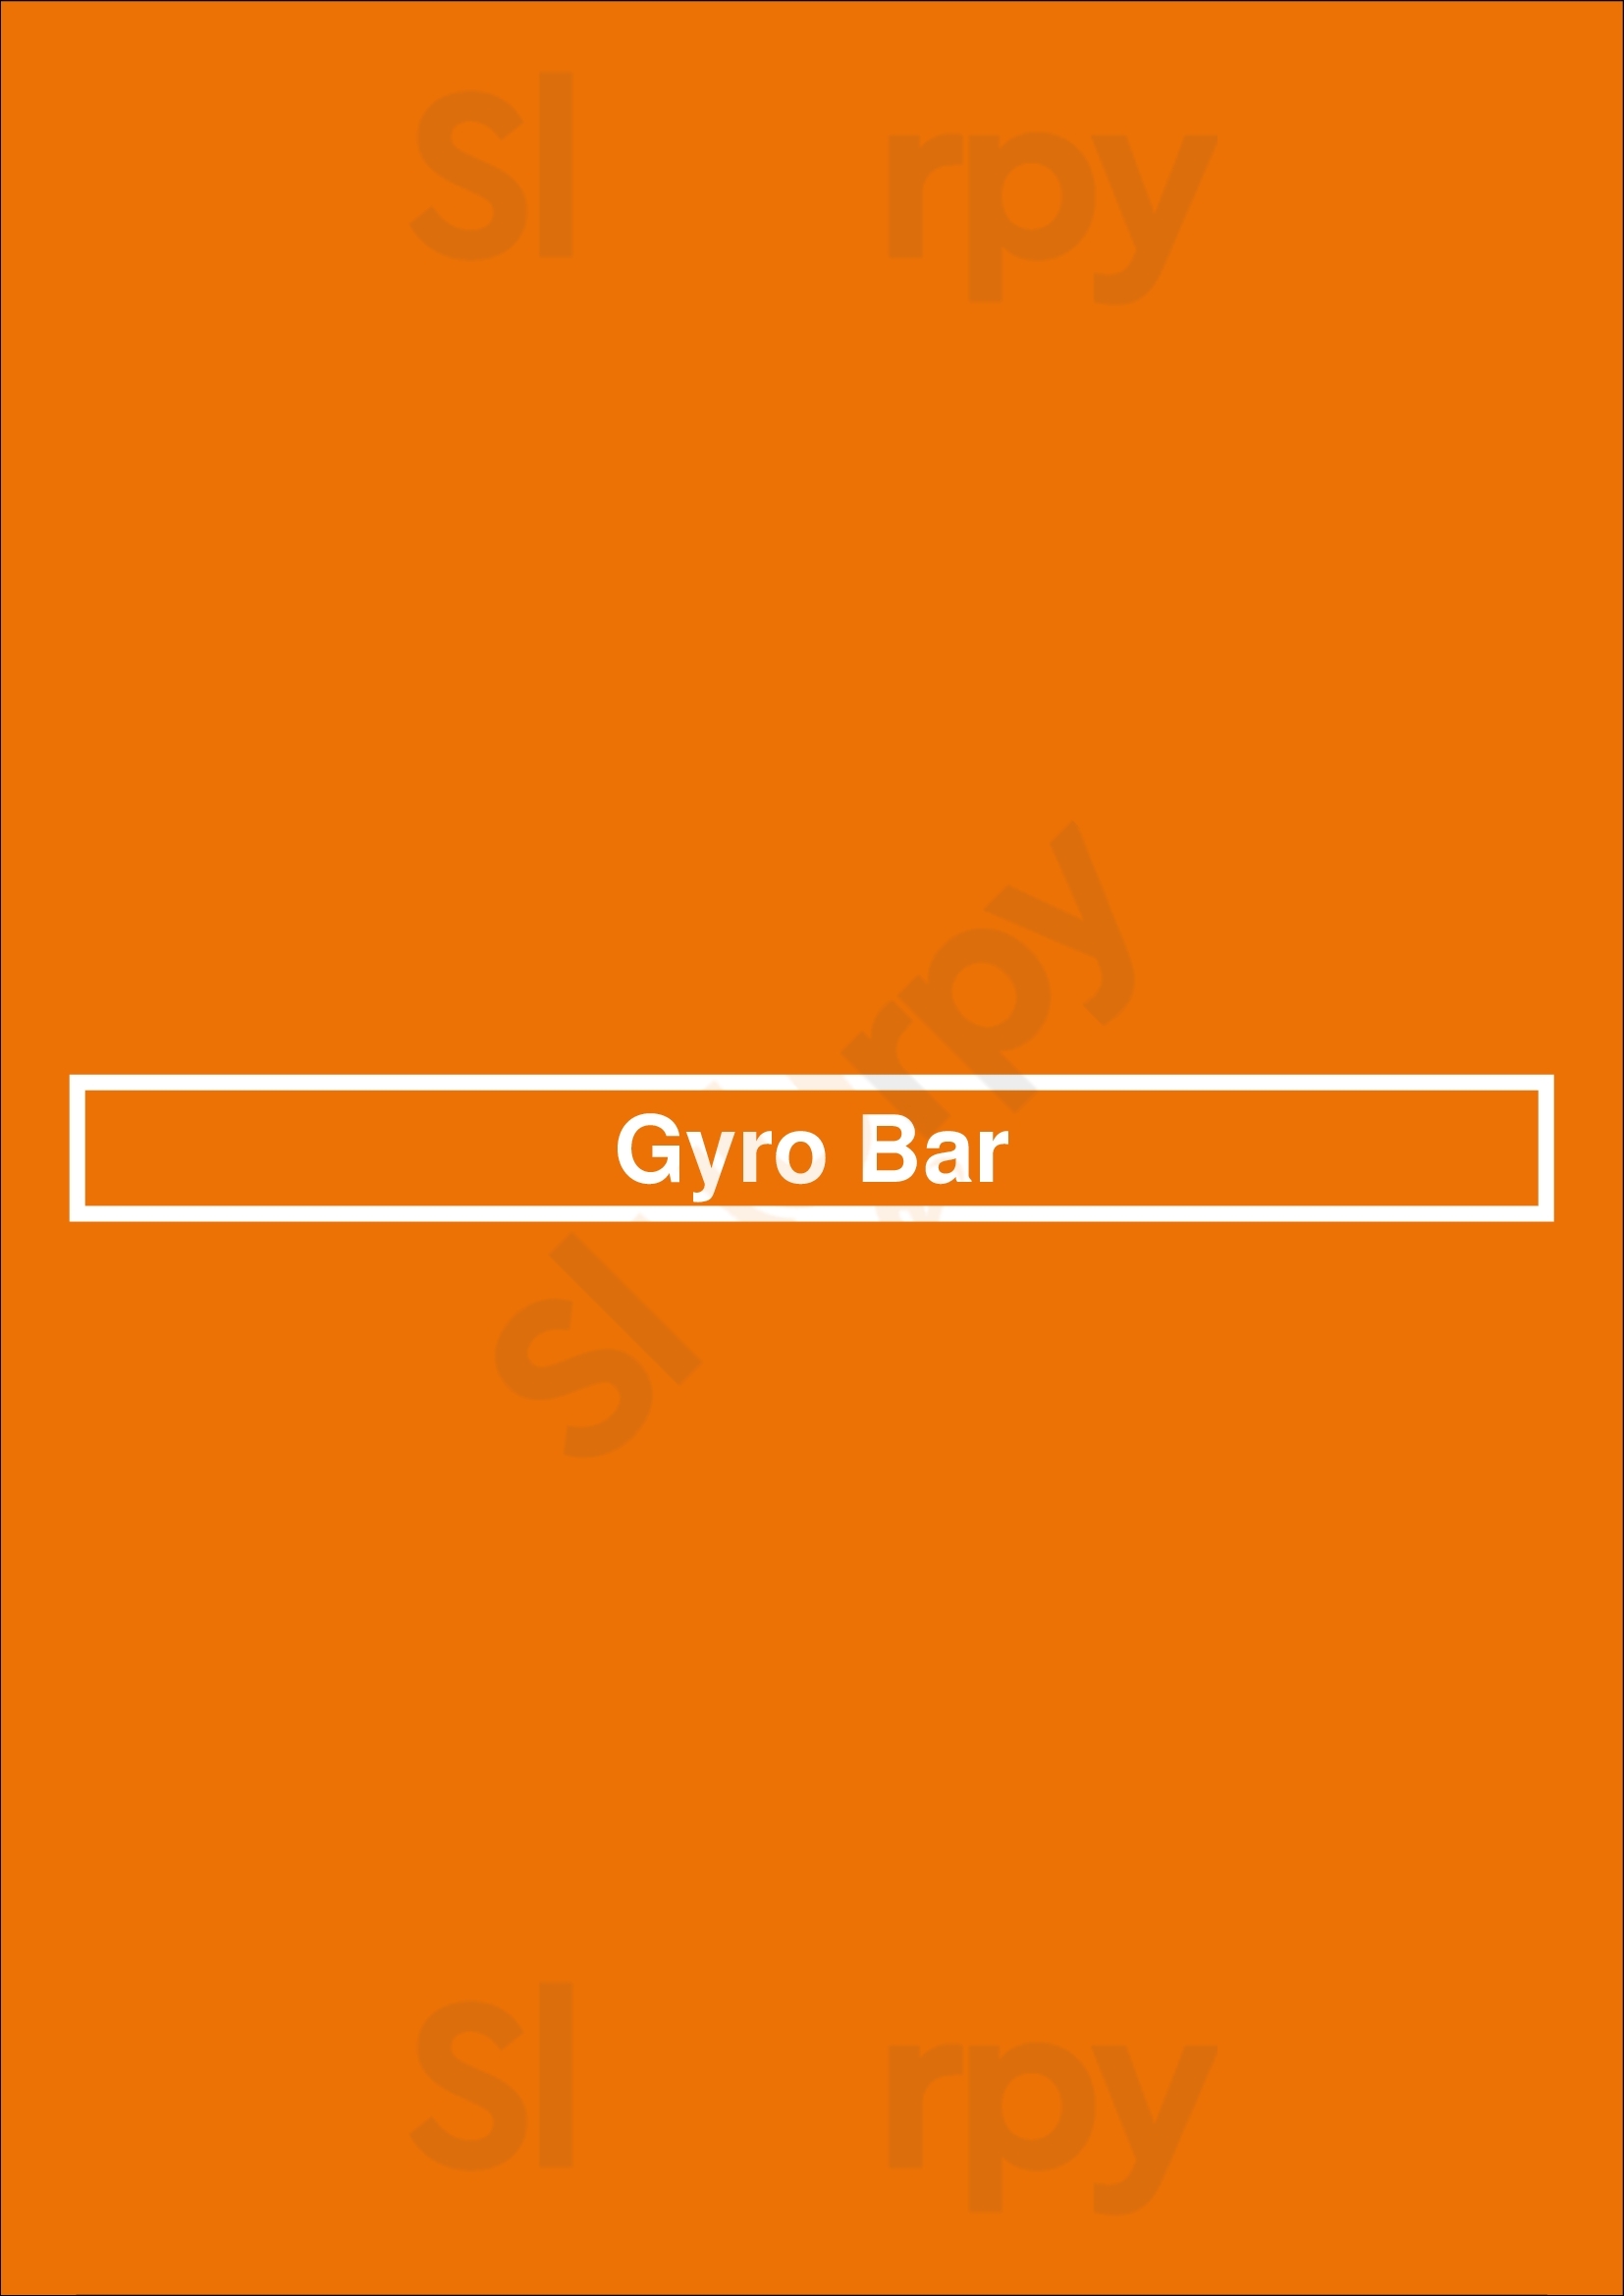 Gyro Bar Toronto Menu - 1